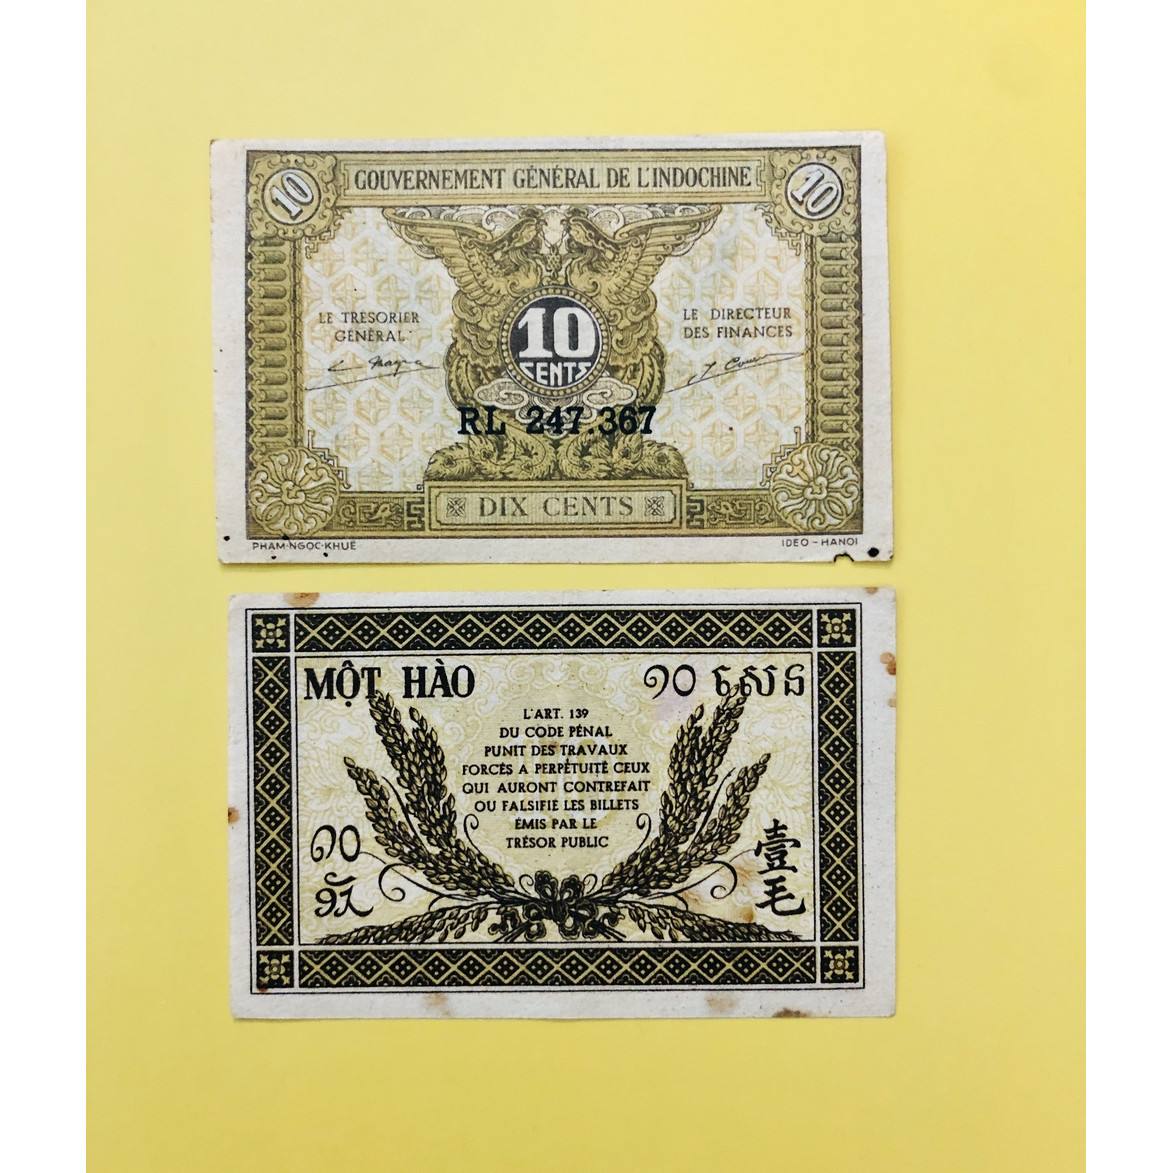 Tờ tiền 1 Hào thời Liên Bang Đông Dương sưu tầm, chất lượng đẹp, kèm bao lì xì